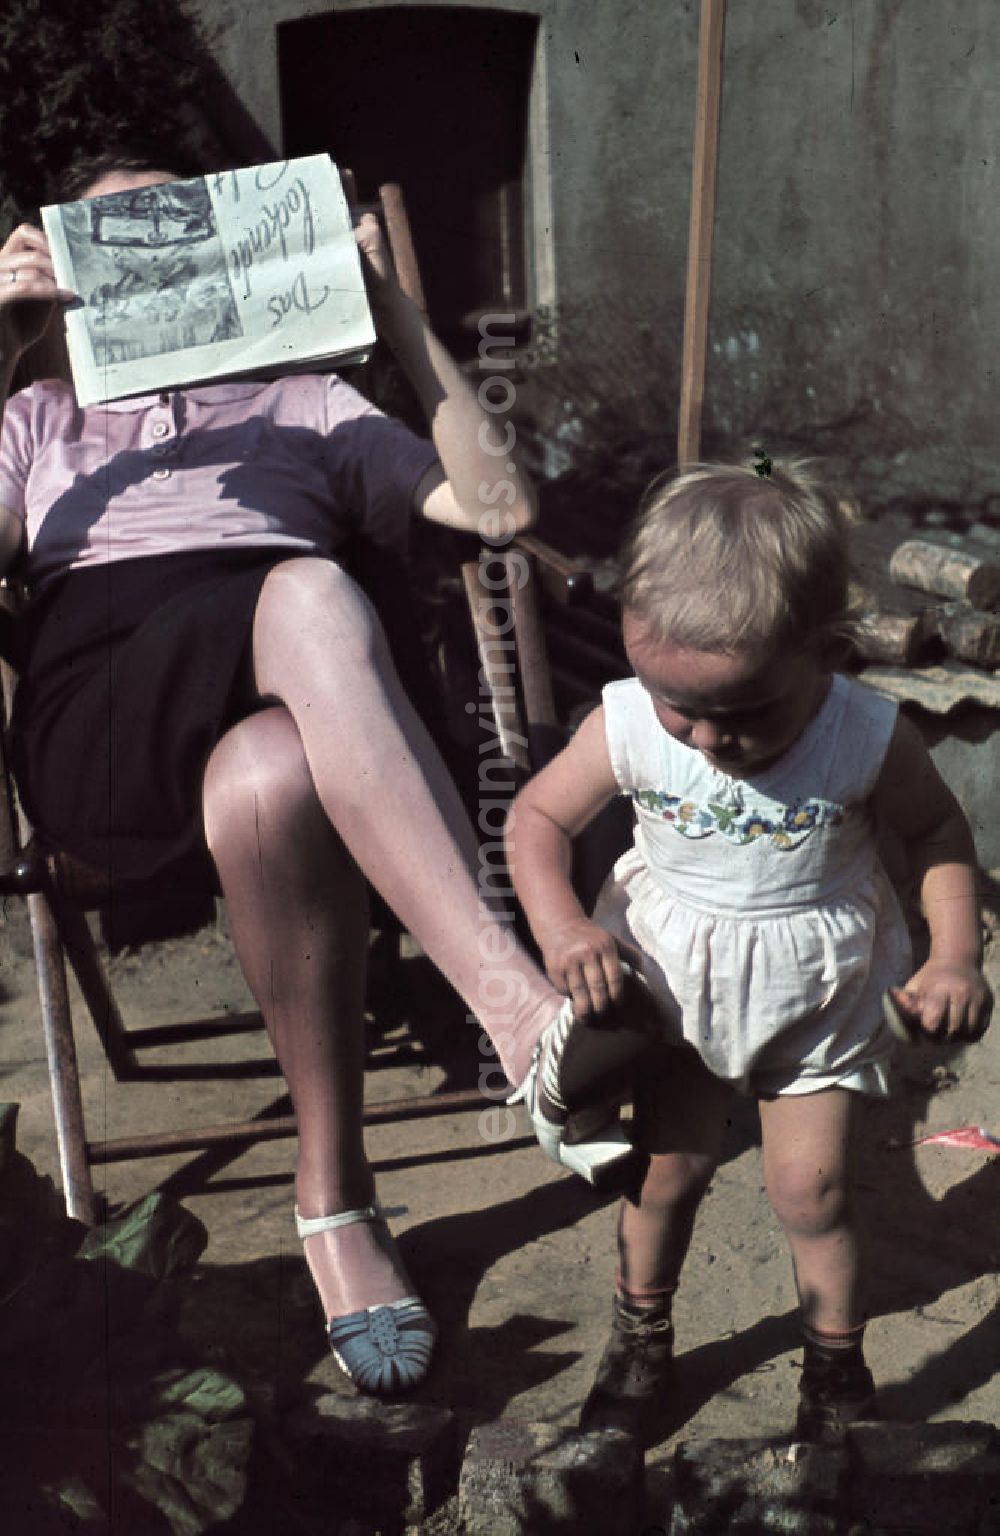 GDR image archive: Siegen - Kleinkind spielt im Garten, die Mutter sitzt im Liegestuhl und liest eine Zeitung. Plying infant in a garden. The mother is sitting in a deck chair and read a newspaper.